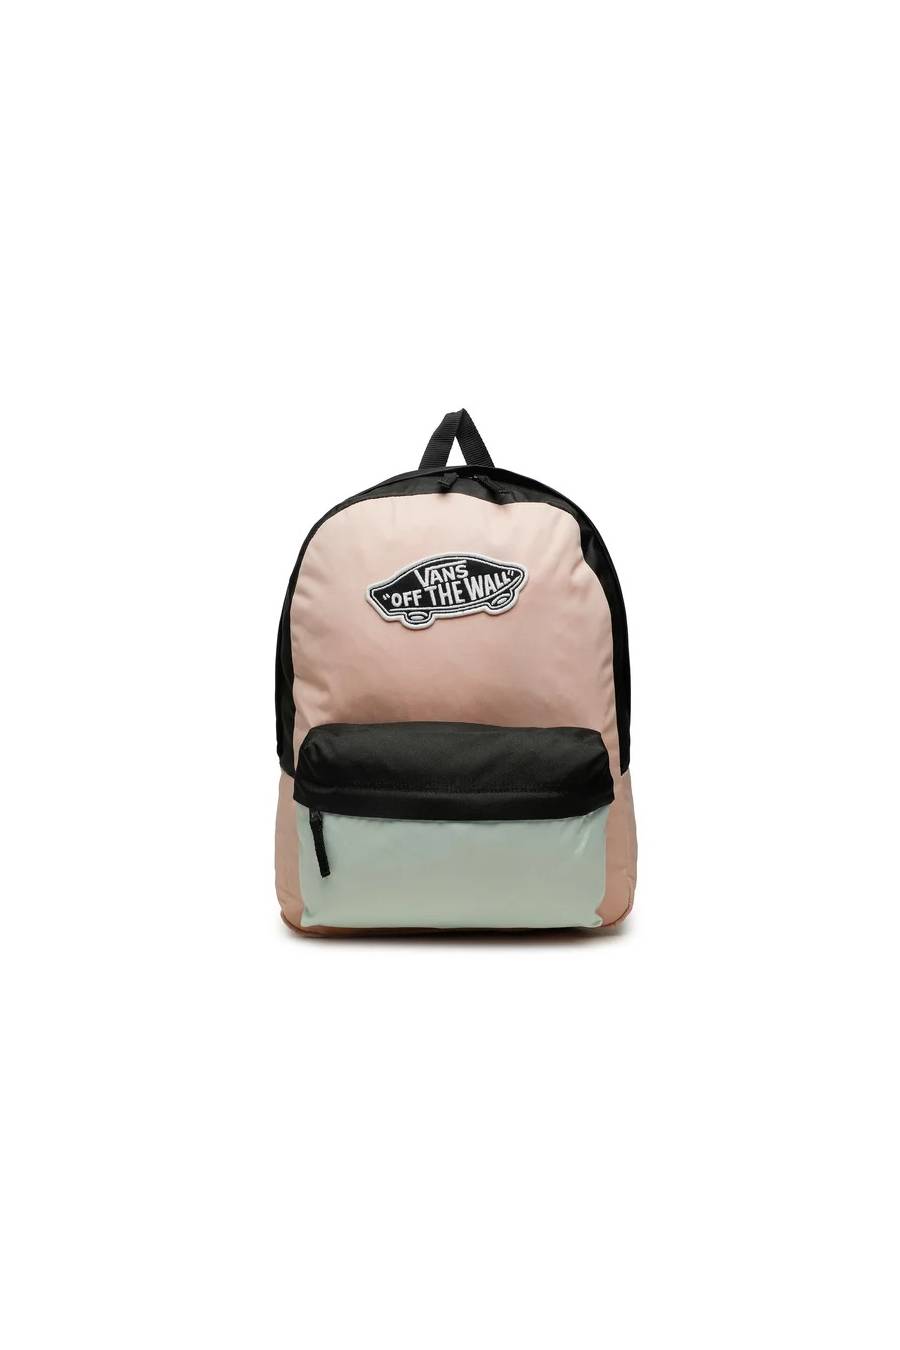 Vans Backpack Tropical Peach VN0A3UI6N4N1